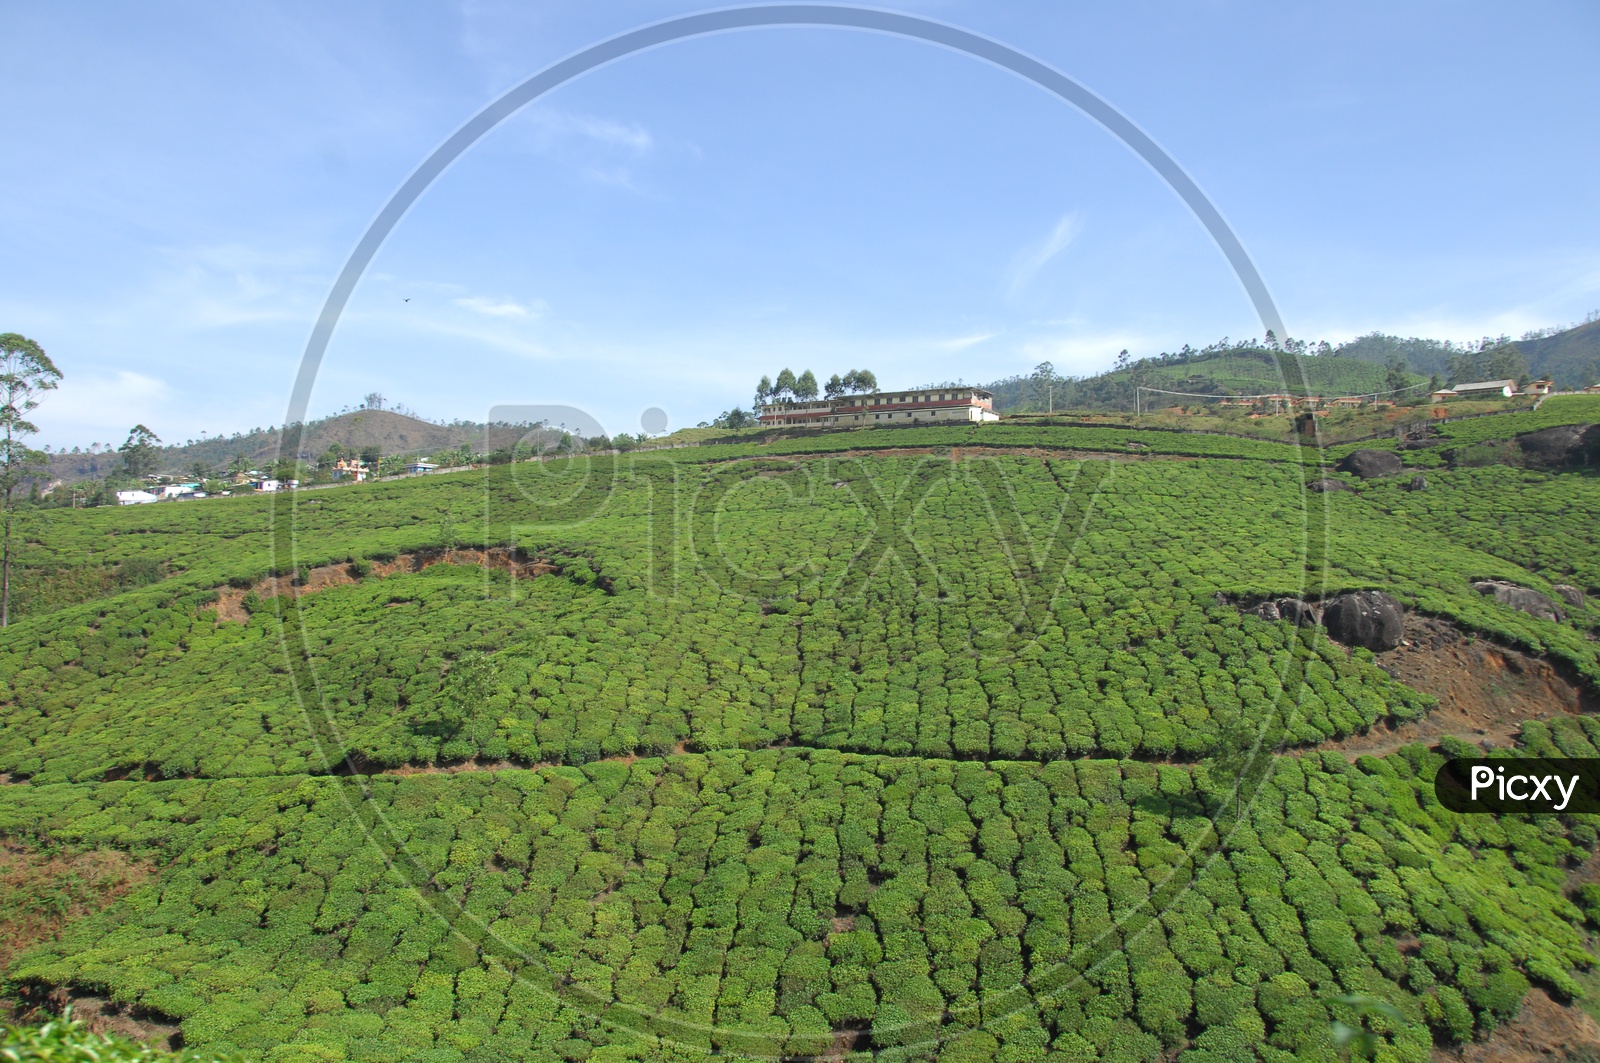 Landscape view of tea plant fields in Kerala